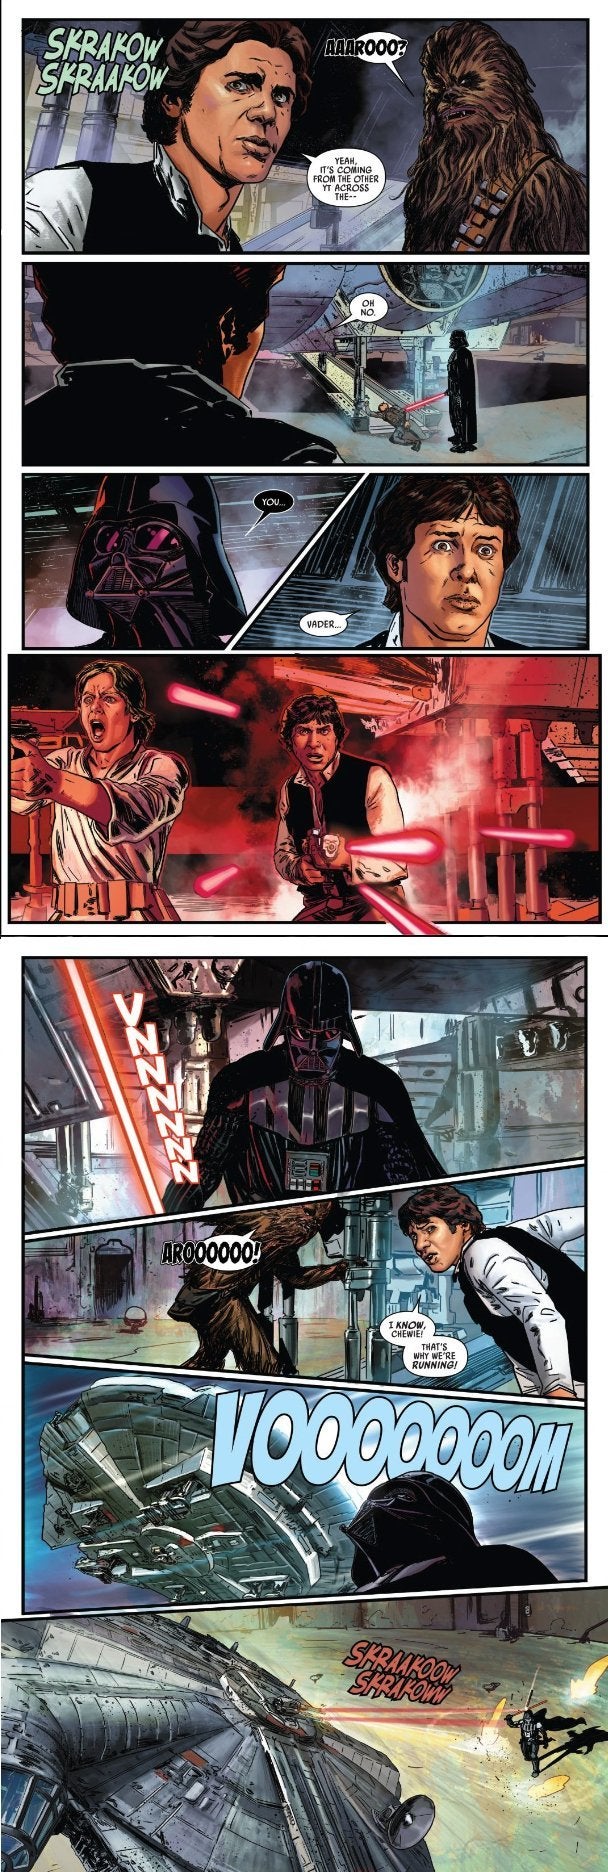 Star Wars Darth Vader vs Han Solo Comic 12 Spoilers